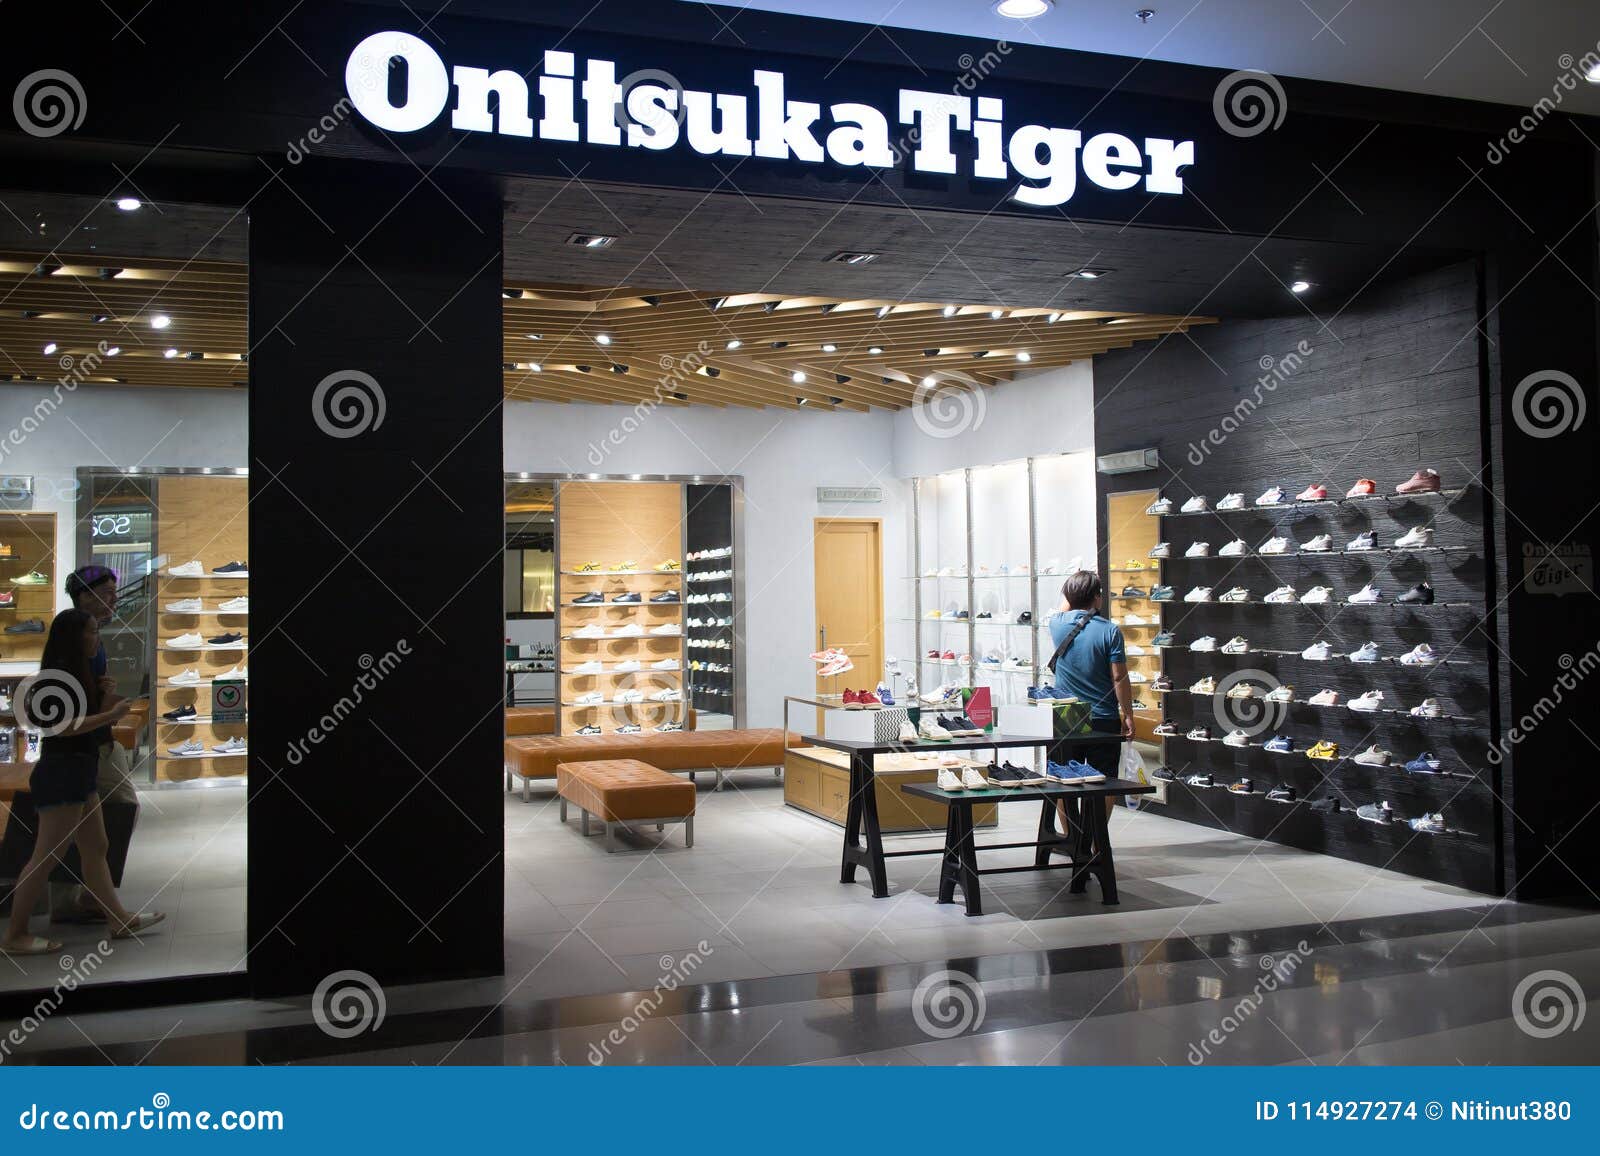 onitsuka tiger central